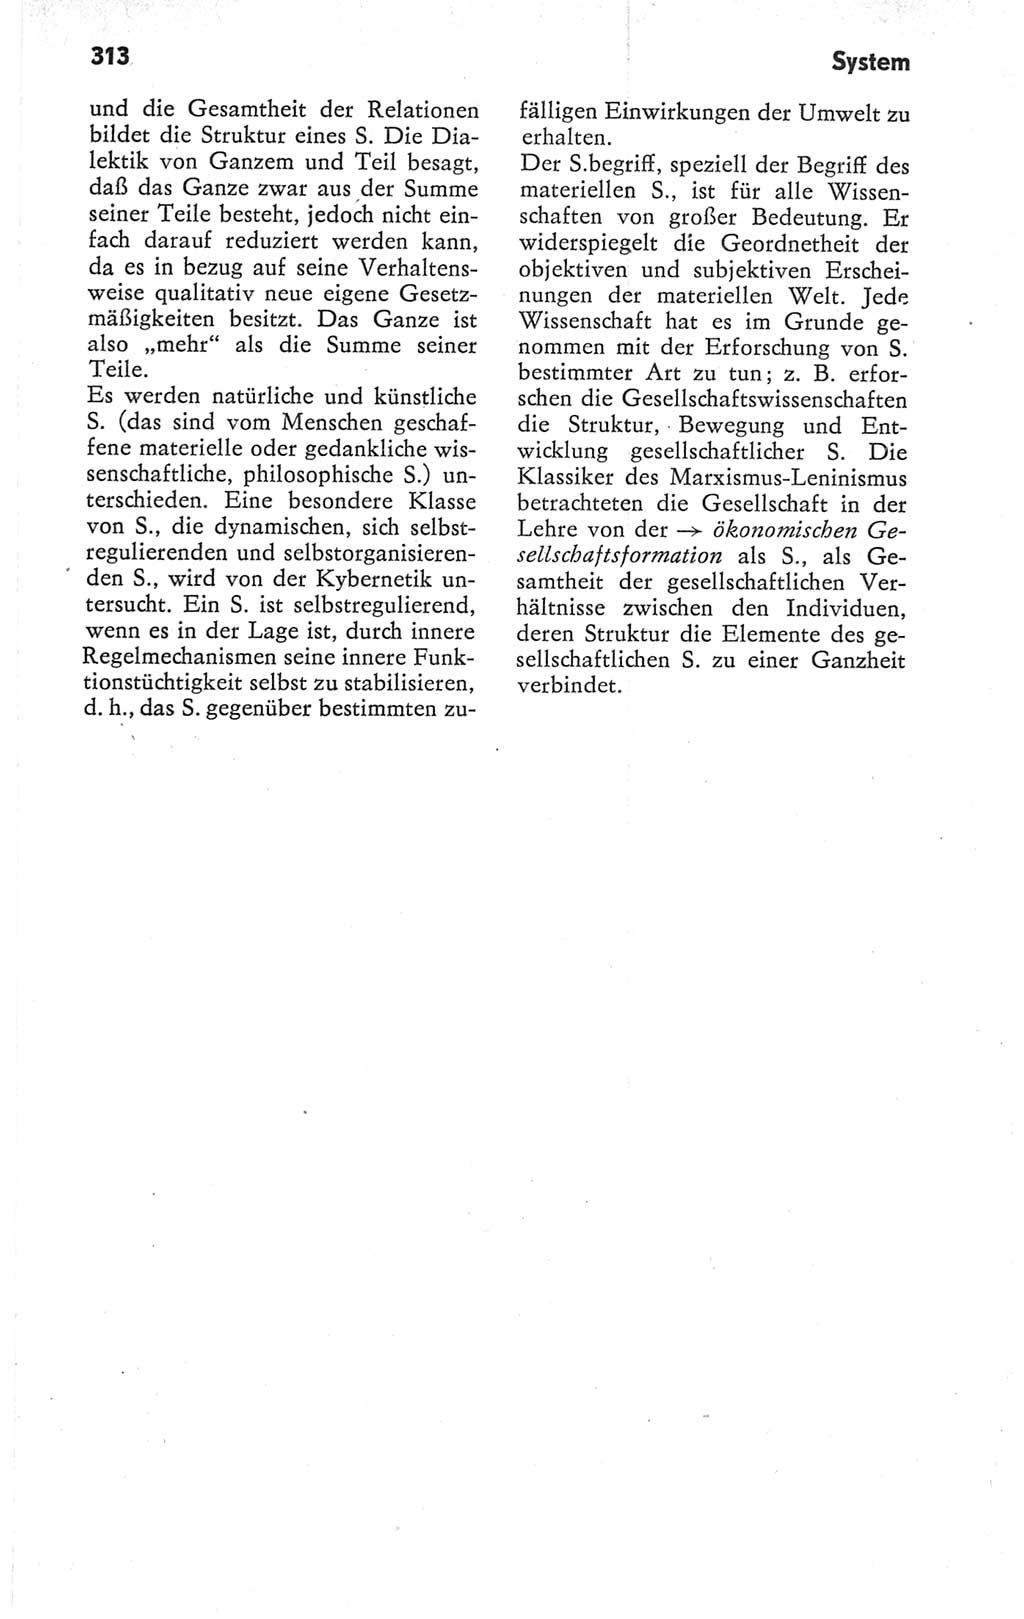 Kleines Wörterbuch der marxistisch-leninistischen Philosophie [Deutsche Demokratische Republik (DDR)] 1979, Seite 313 (Kl. Wb. ML Phil. DDR 1979, S. 313)